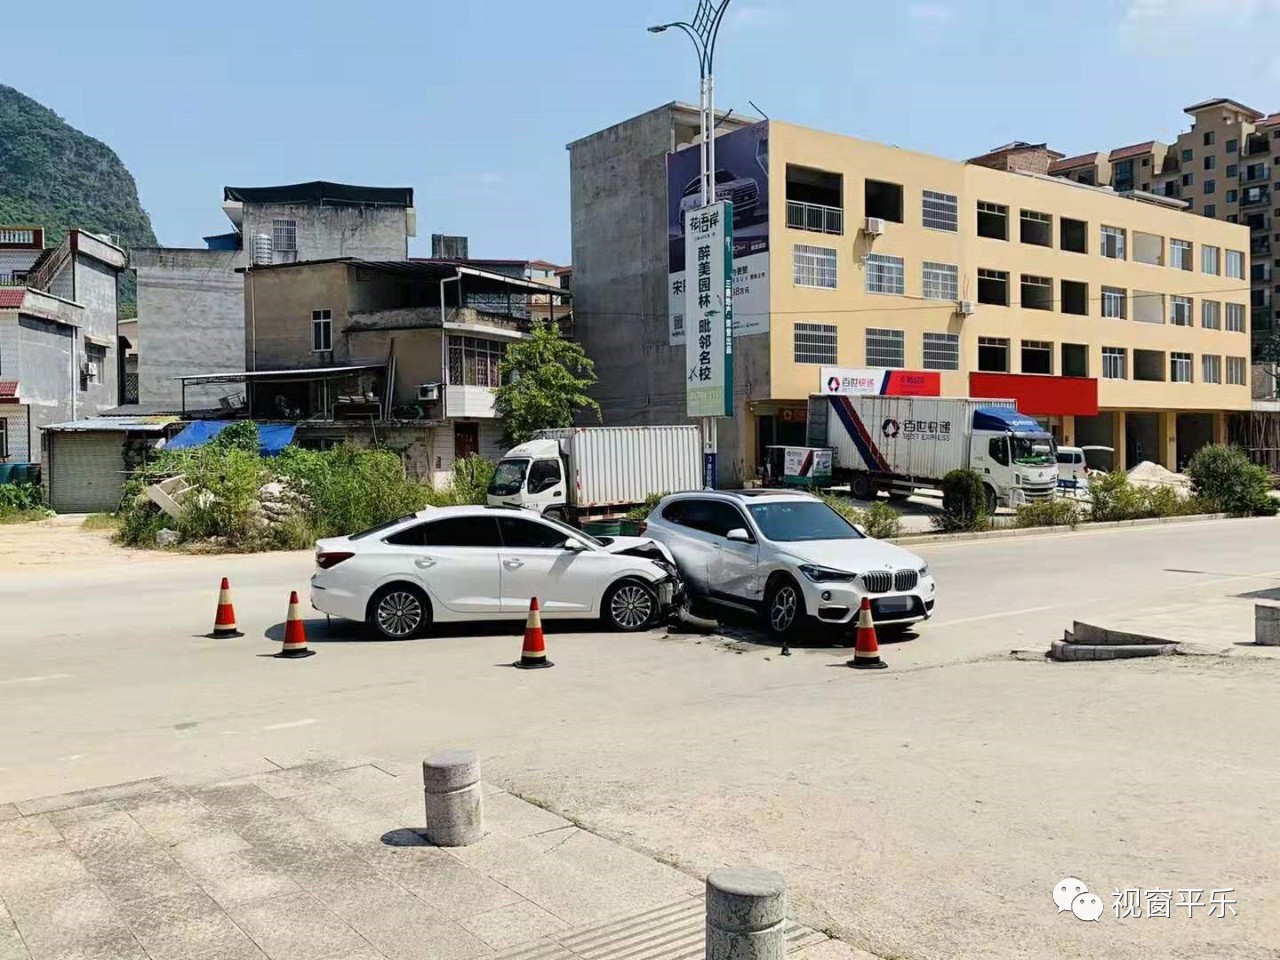 就在昨天，平乐一辆白色小车撞上宝马···651 / 作者:hoei / 帖子ID:268566